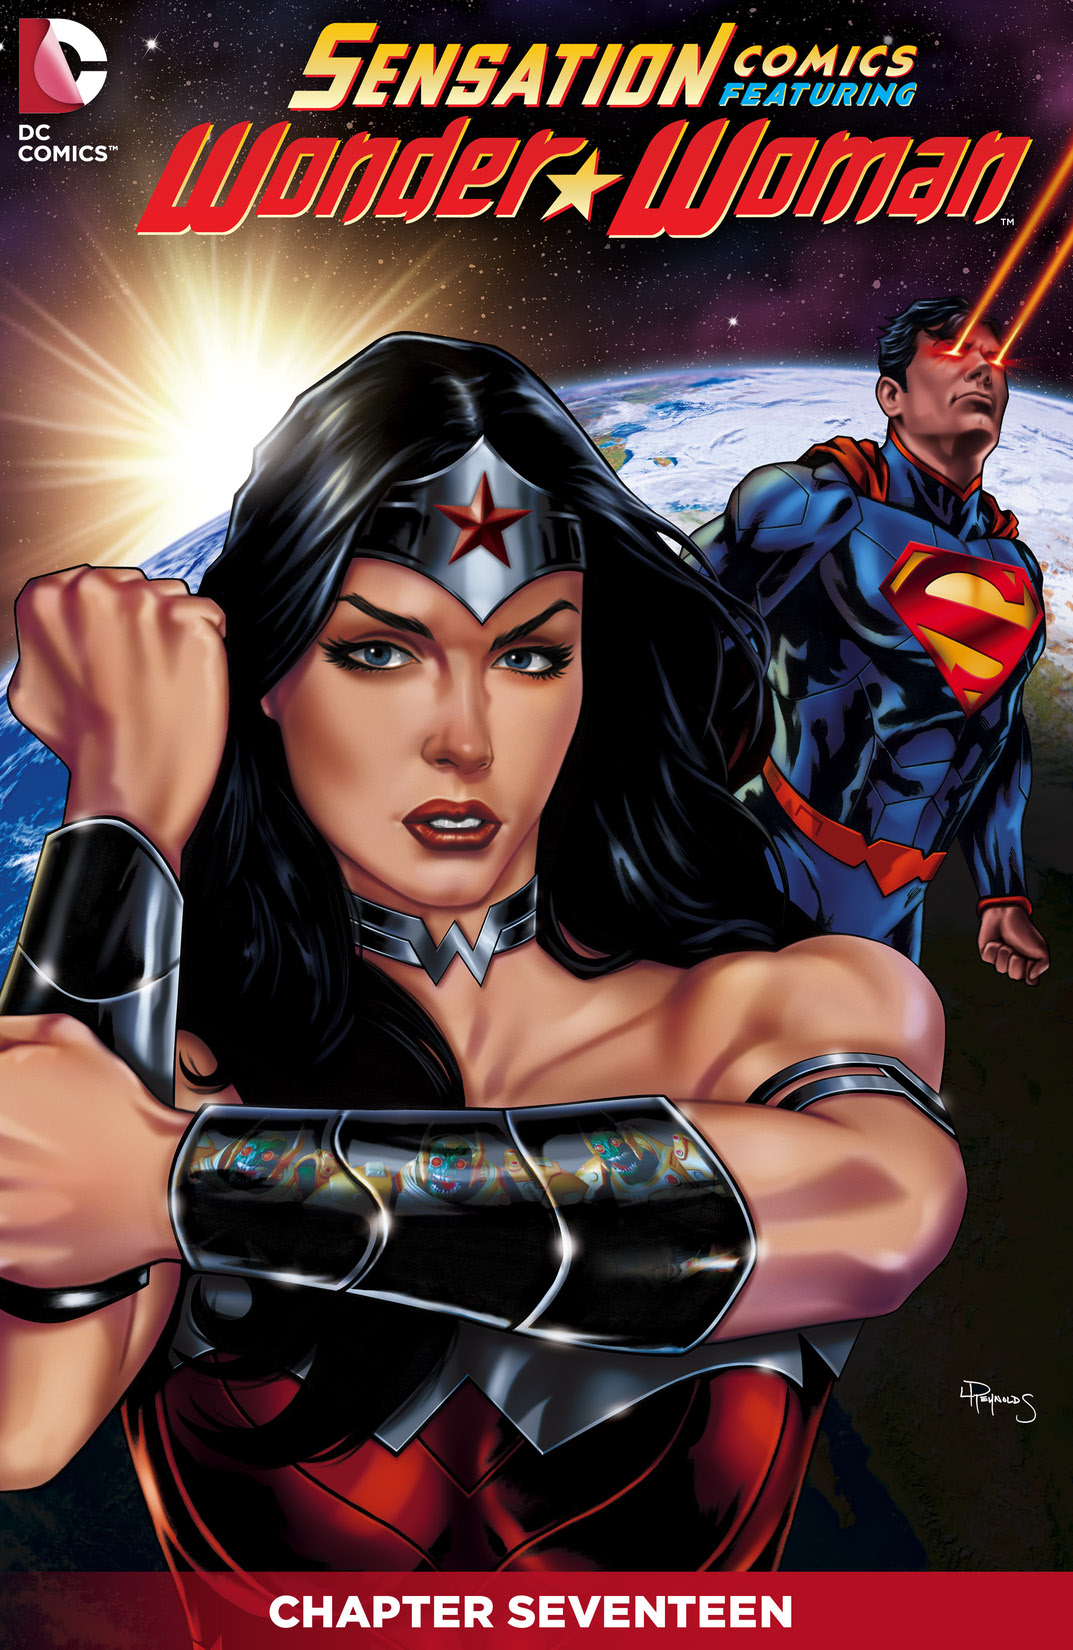 Sensation Comics Featuring Wonder Woman #17 preview images